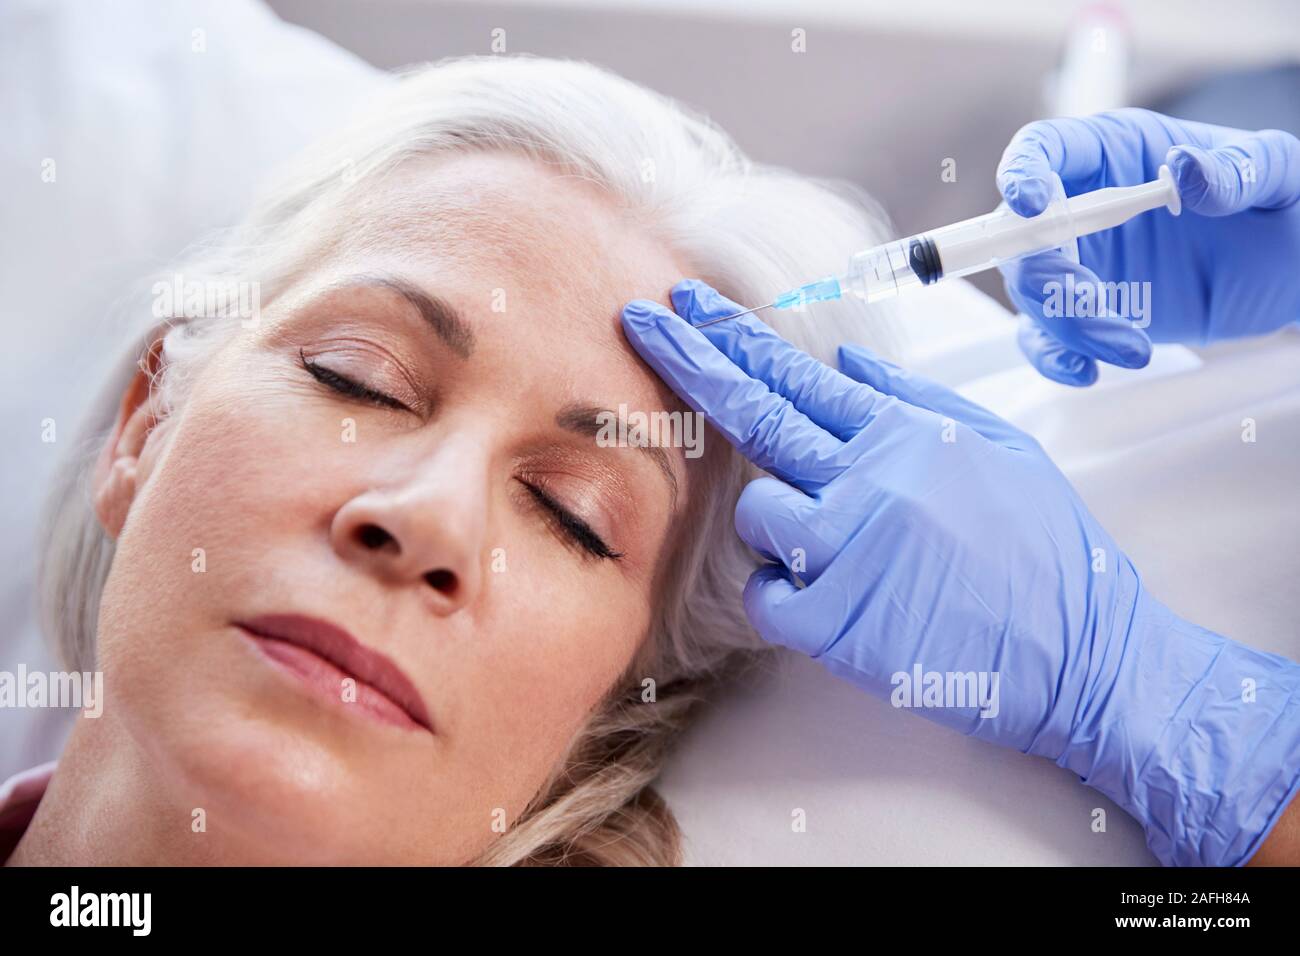 Femelle adulte donnant coiffeur injection de Botox dans le front du patient Banque D'Images